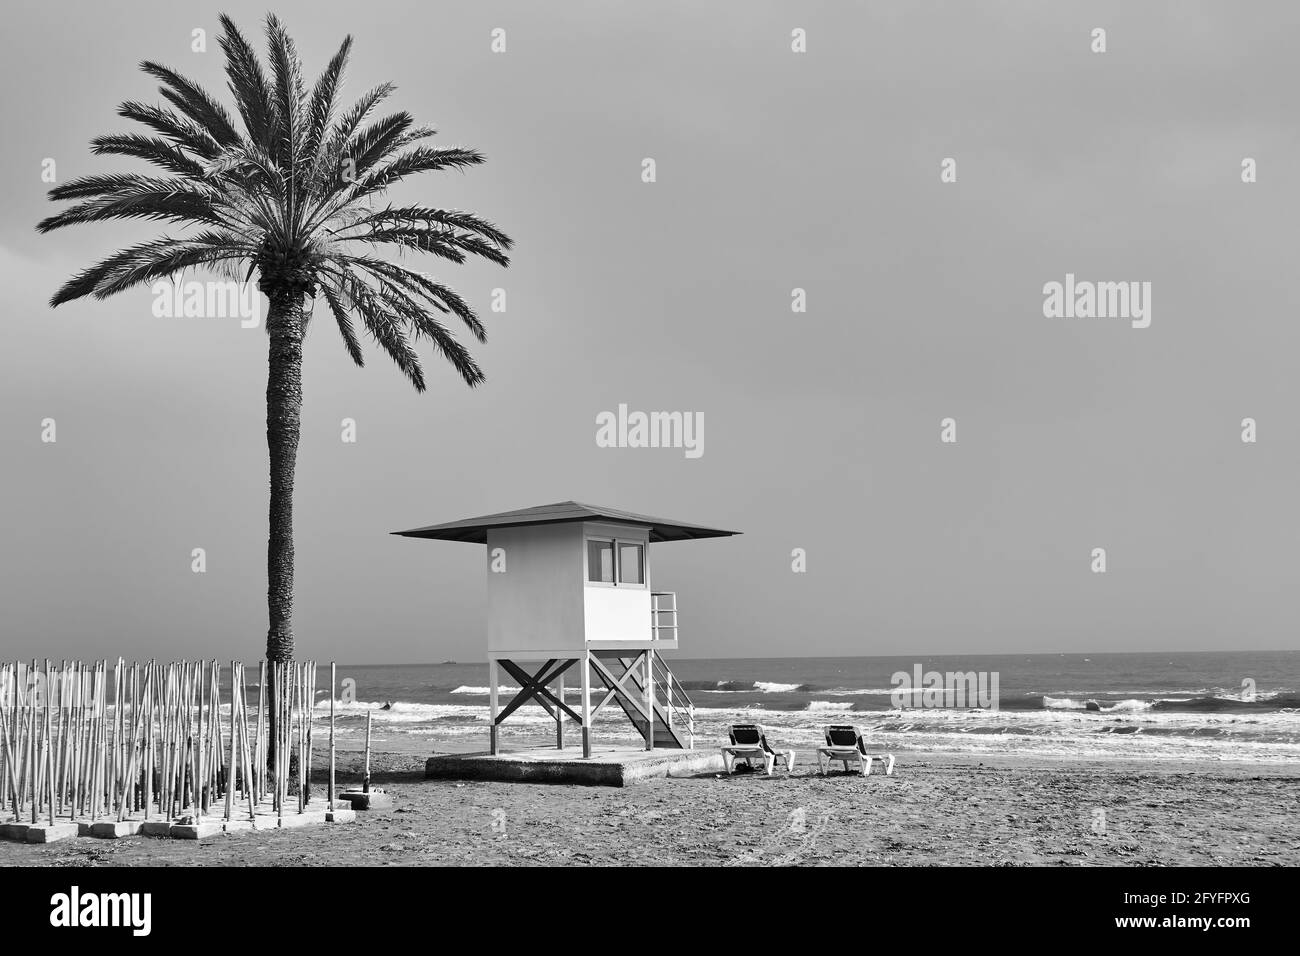 Plage avec palmier et tour de maître-nageur au bord de la mer Hors saison - Photographie noir et blanc Banque D'Images